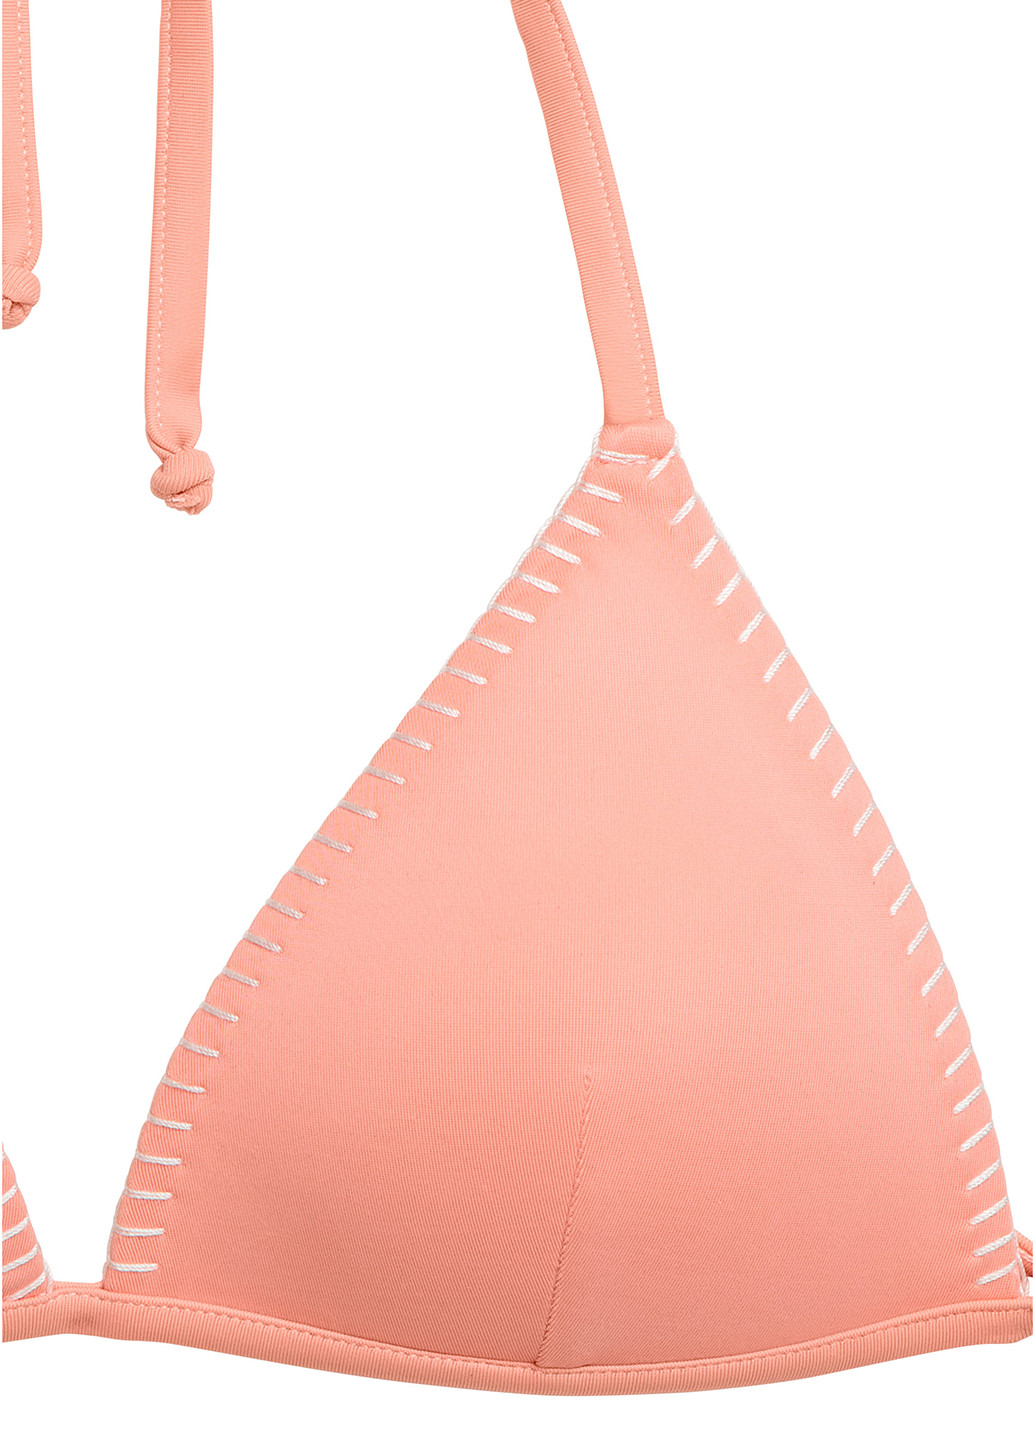 Купальний ліф H&M бікіні однотонний рожевий пляжний поліестер